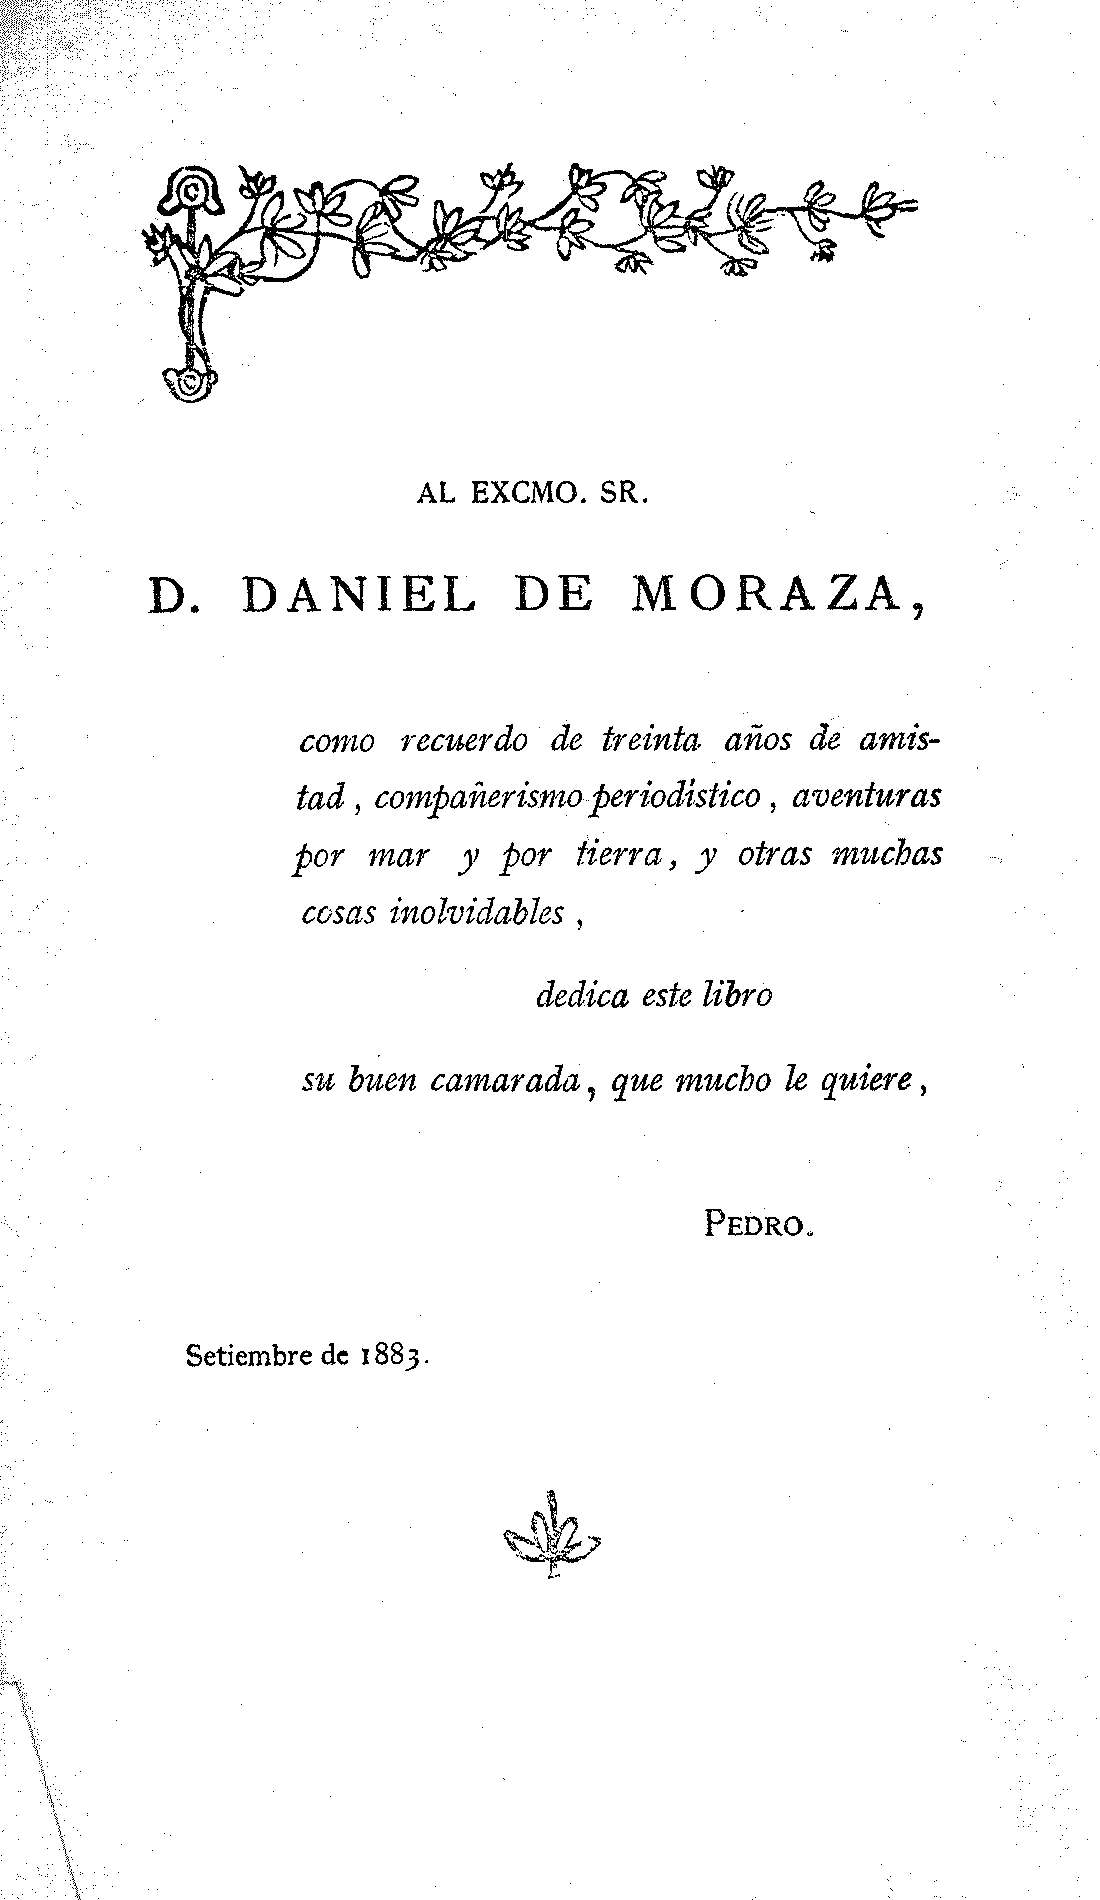 Al Excmo. Sr. D. Daniel de Moraza